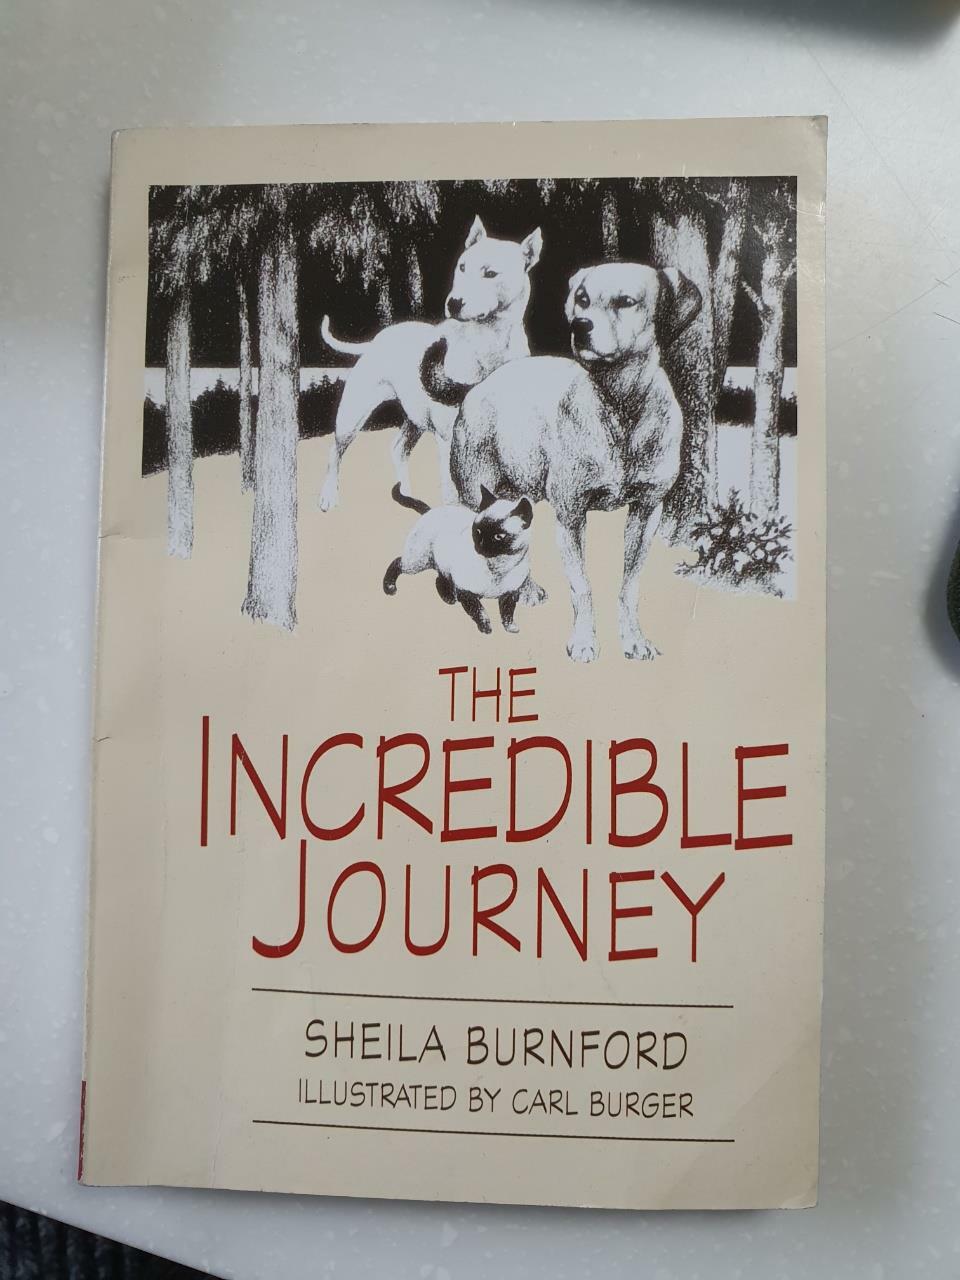 [중고] The Incredible Journey (Paperback)